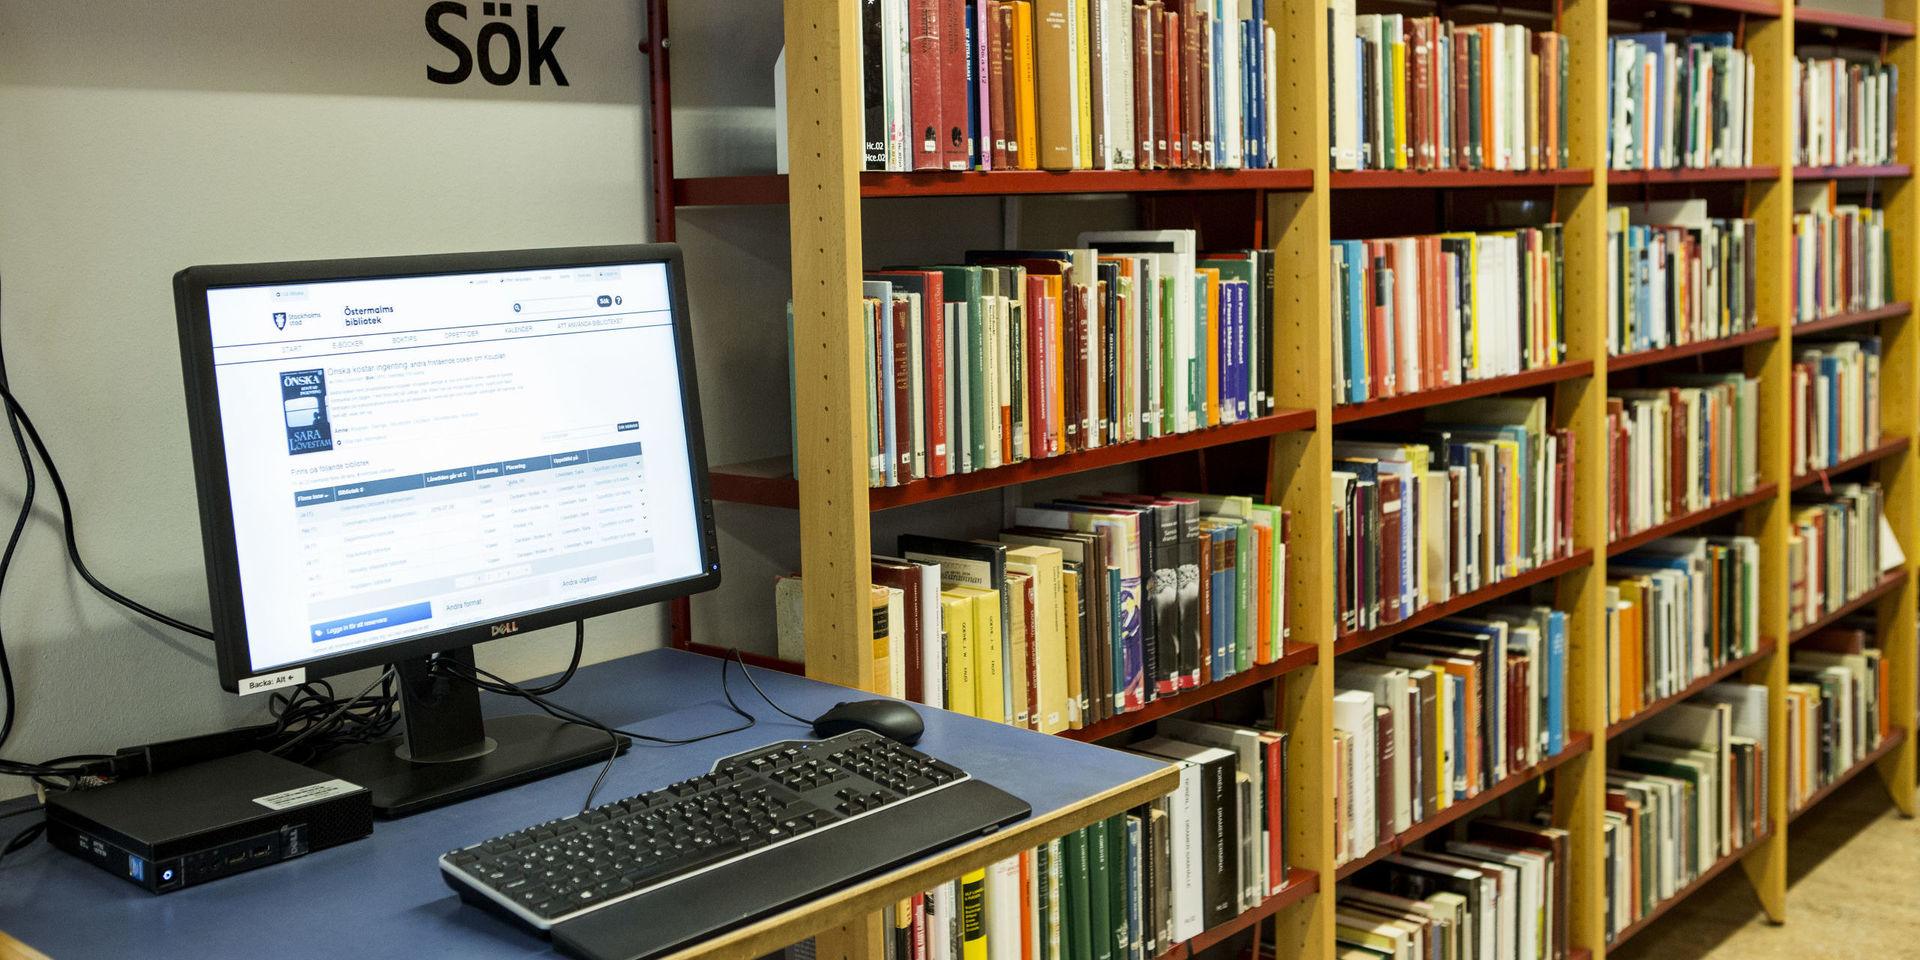 Digital utlåning kan inte ersätta skolbibliotekarien, skriver insändarskribenterna.